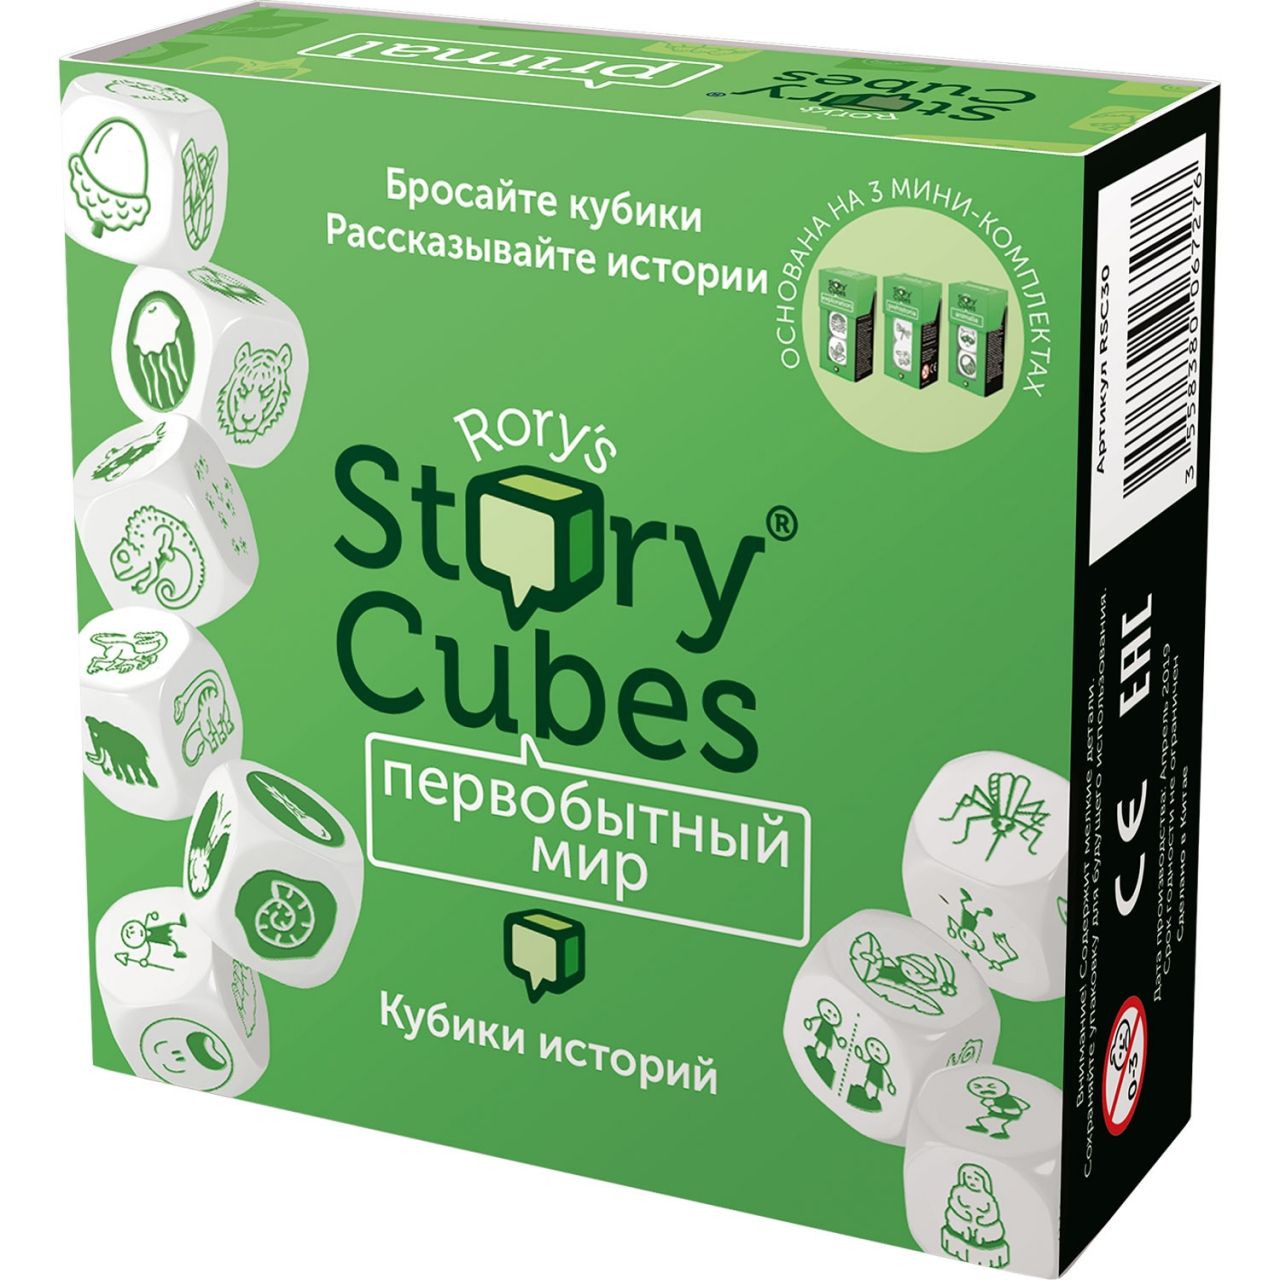 Настольная игра RORYS STORY CUBES RSC30 кубики историй Первобытный мир настольная игра кубики историй действия